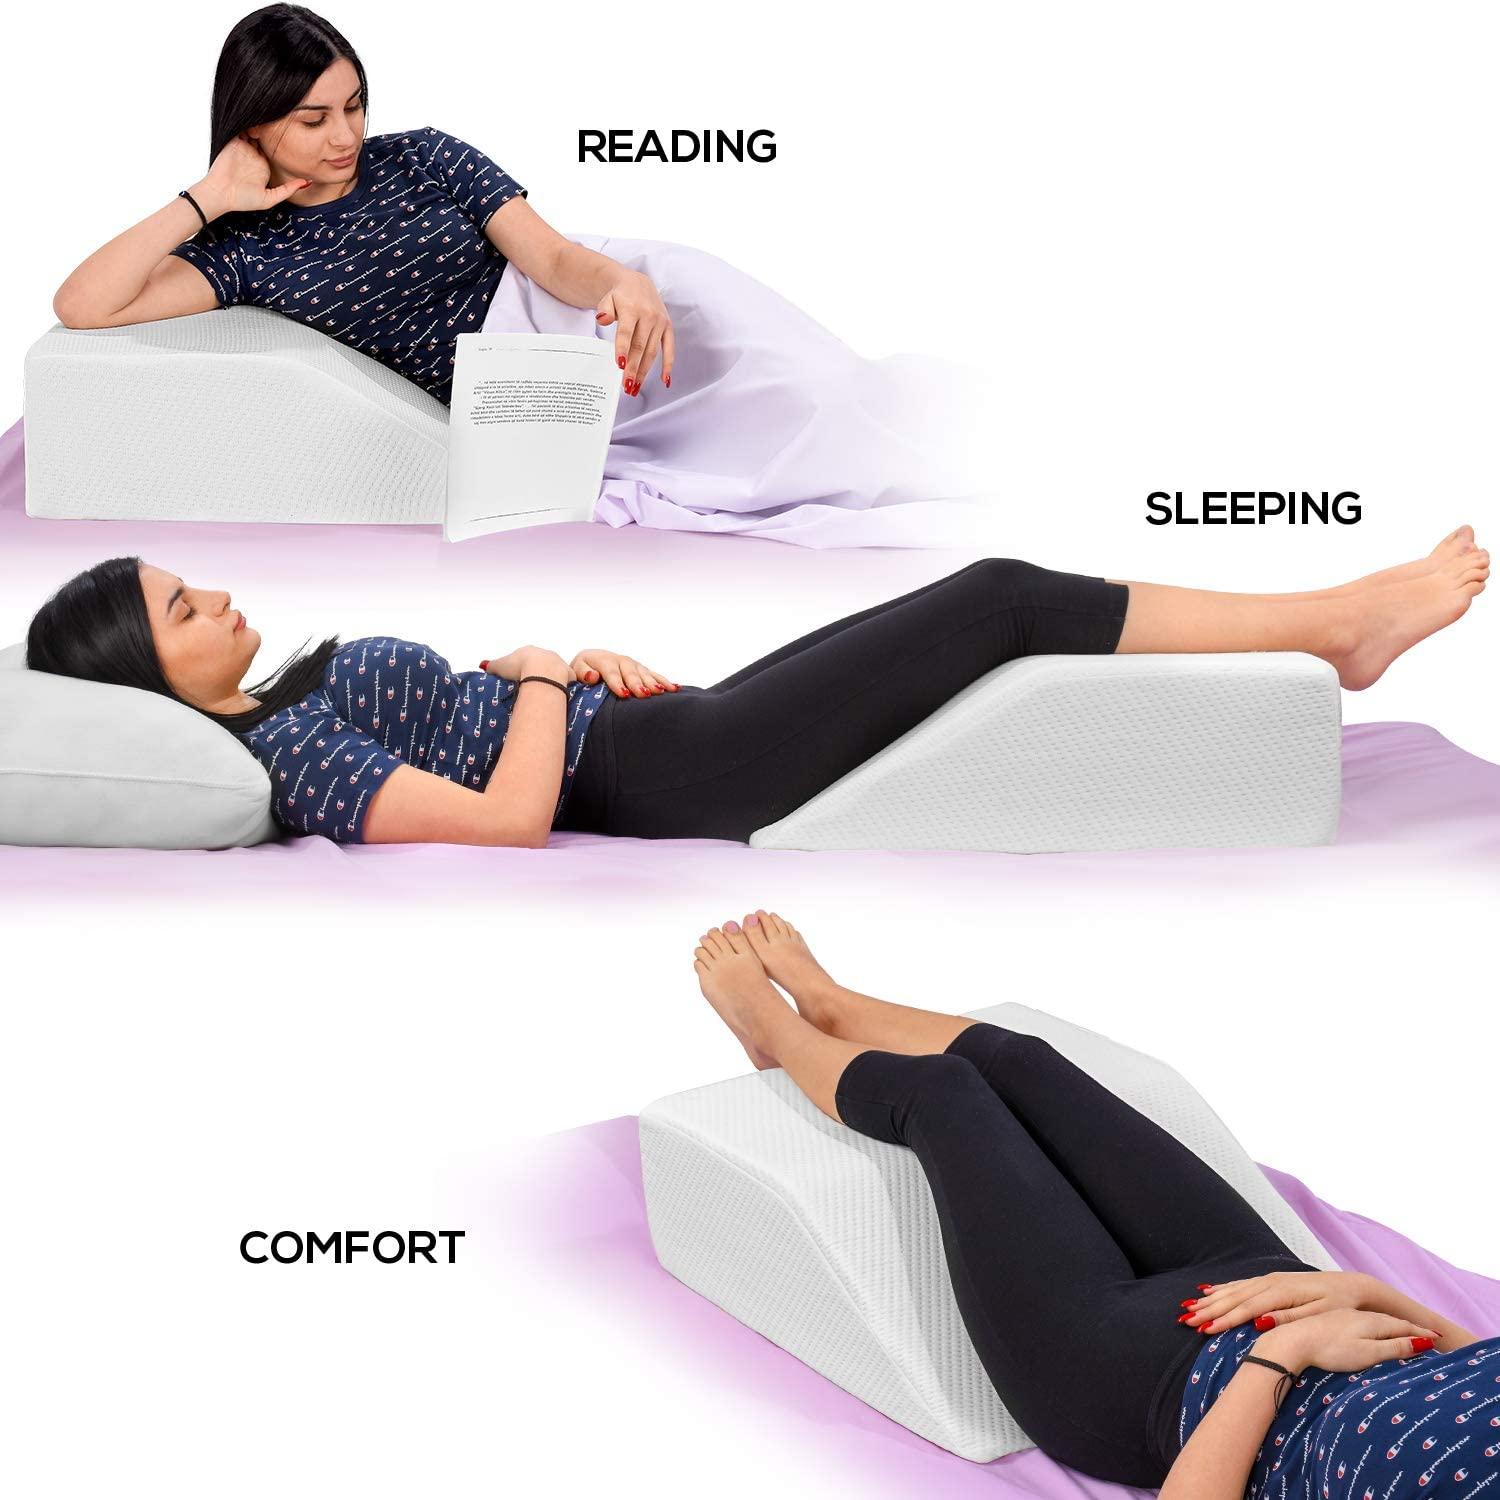  Leg Elevation Pillow - Leg Pillows for Sleeping